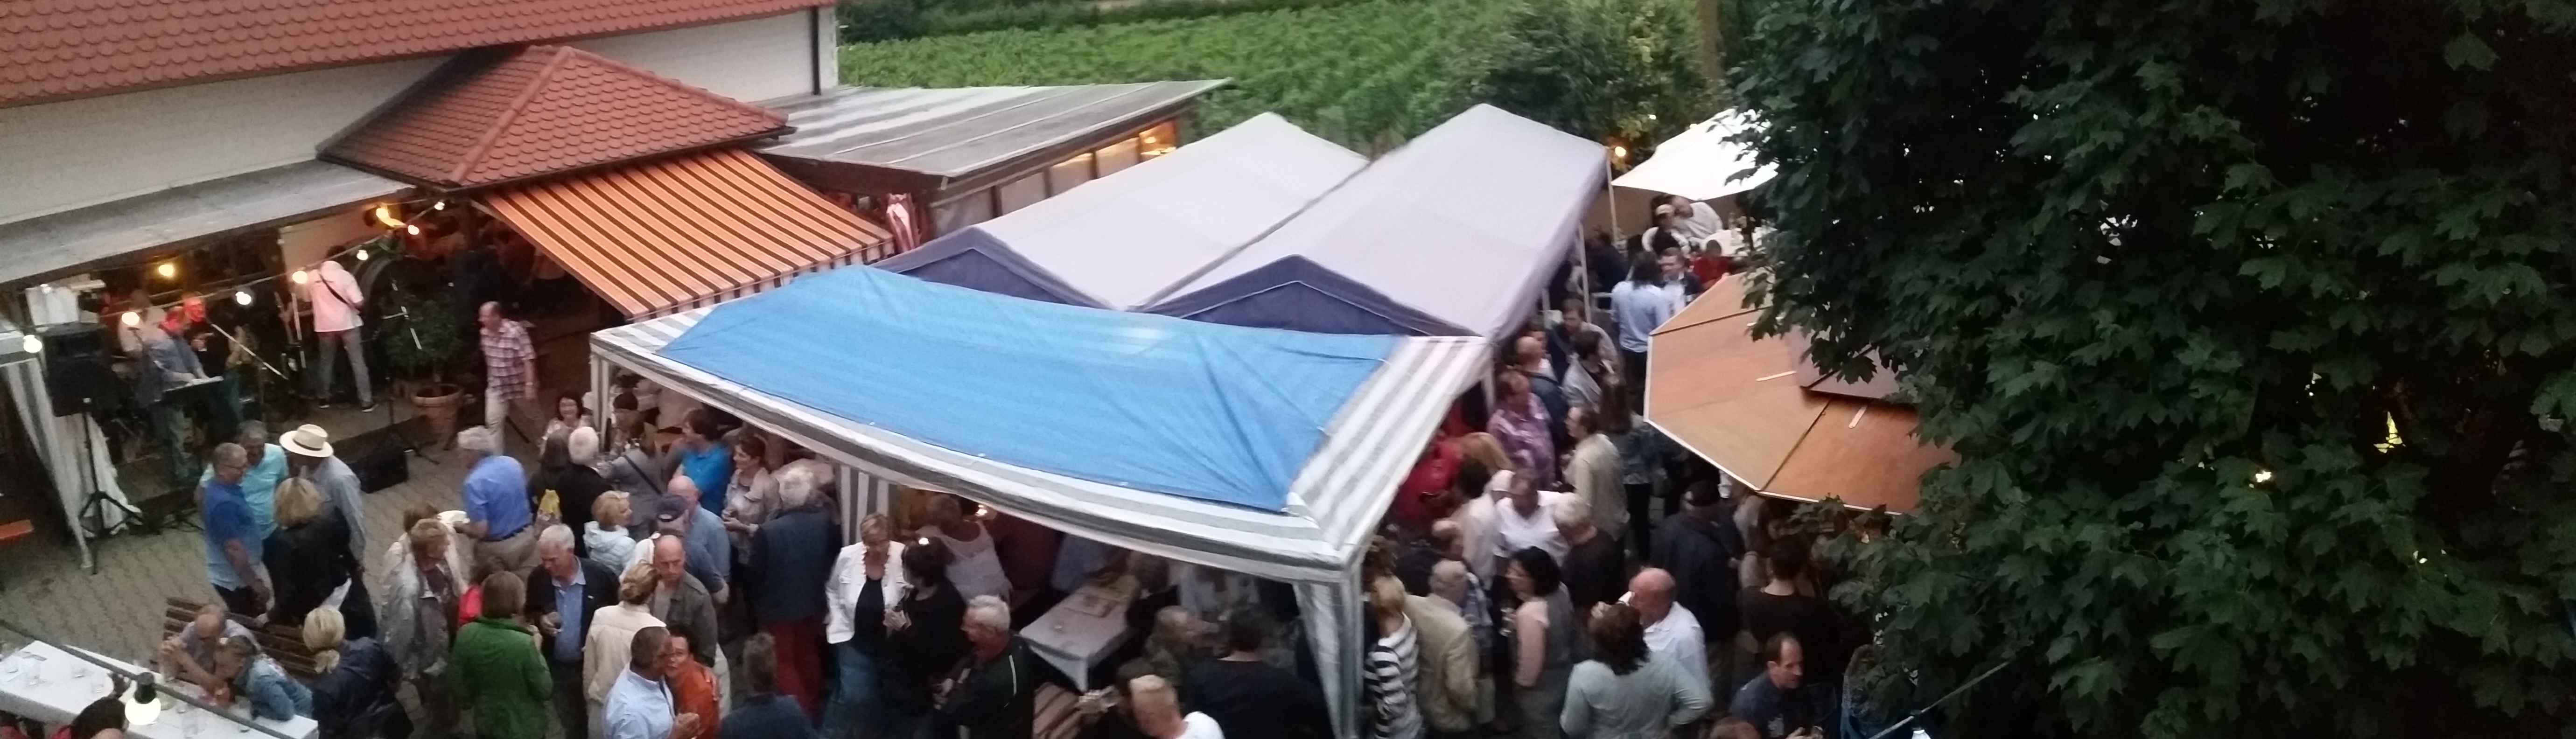 Panoramafoto über den Hof während des Weinfestes